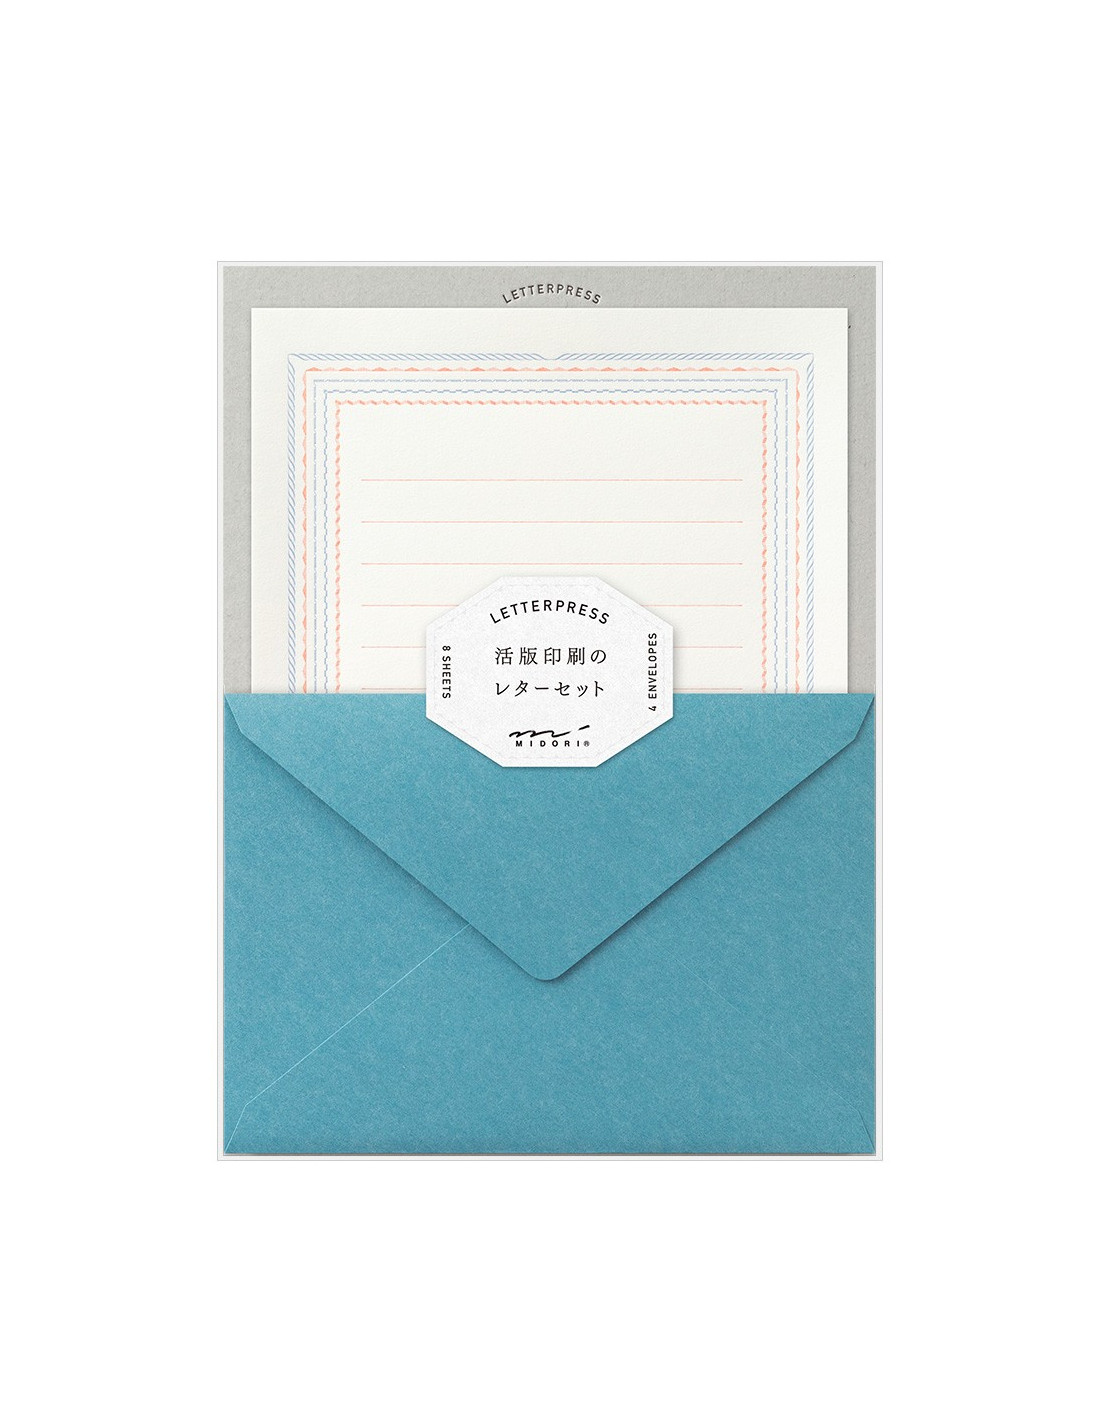 https://papeterie-makkura.fr/16337-home_default/lot-de-papier-a-lettre-enveloppes-letterpress-cadre-bleu-et-rouge-midori.jpg